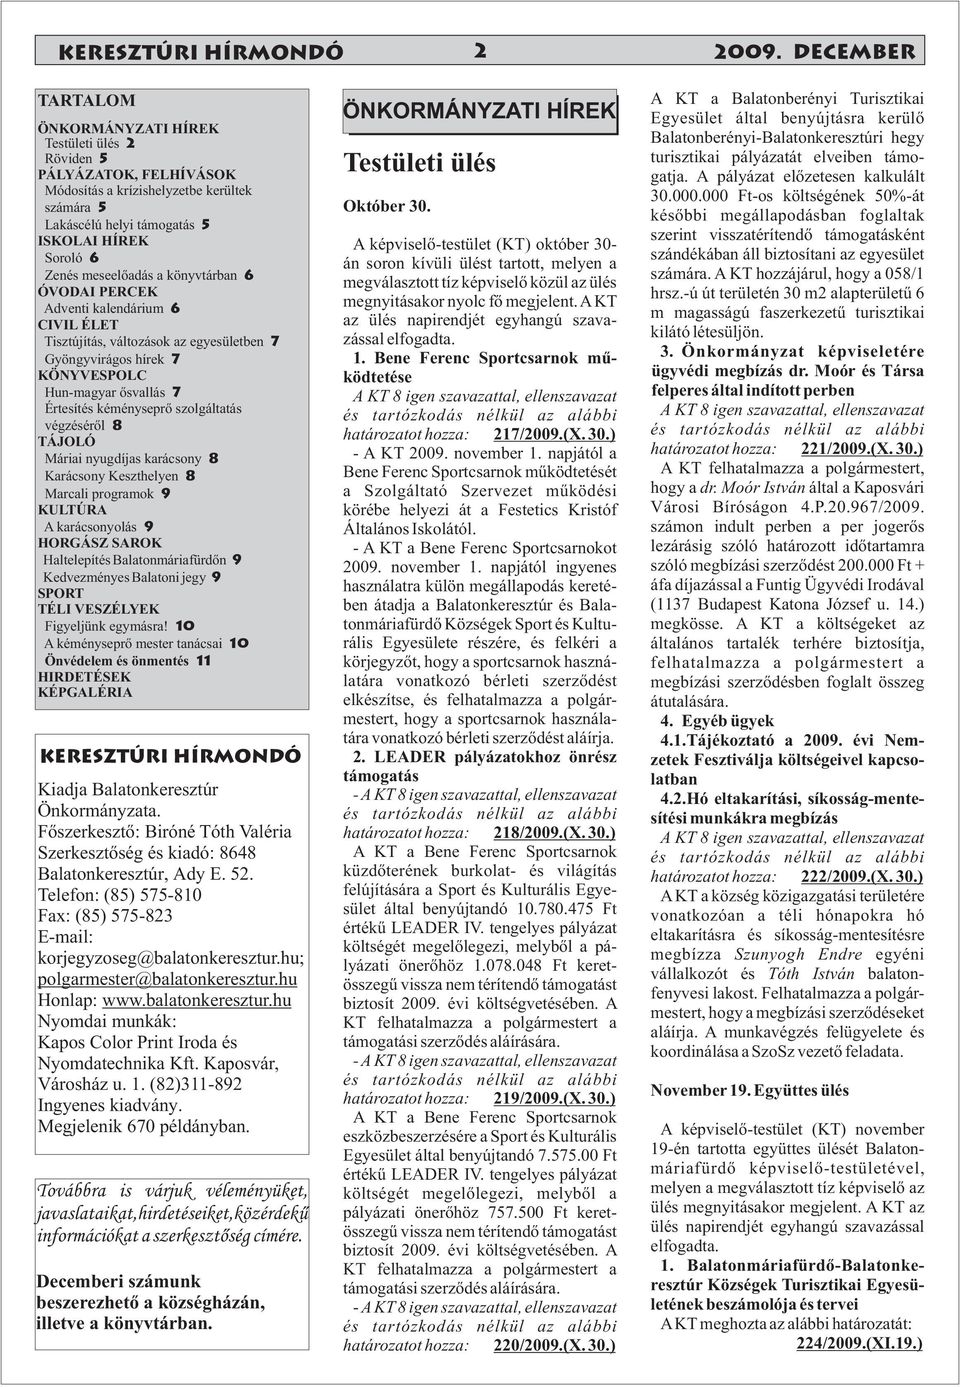 meseelőadás a könyvtárban 6 ÓVODAI PERCEK Adventi kalendárium 6 CIVIL ÉLET Tisztújítás, változások az egyesületben 7 Gyöngyvirágos hírek 7 KÖNYVESPOLC Hun-magyar ősvallás 7 Értesítés kéményseprő